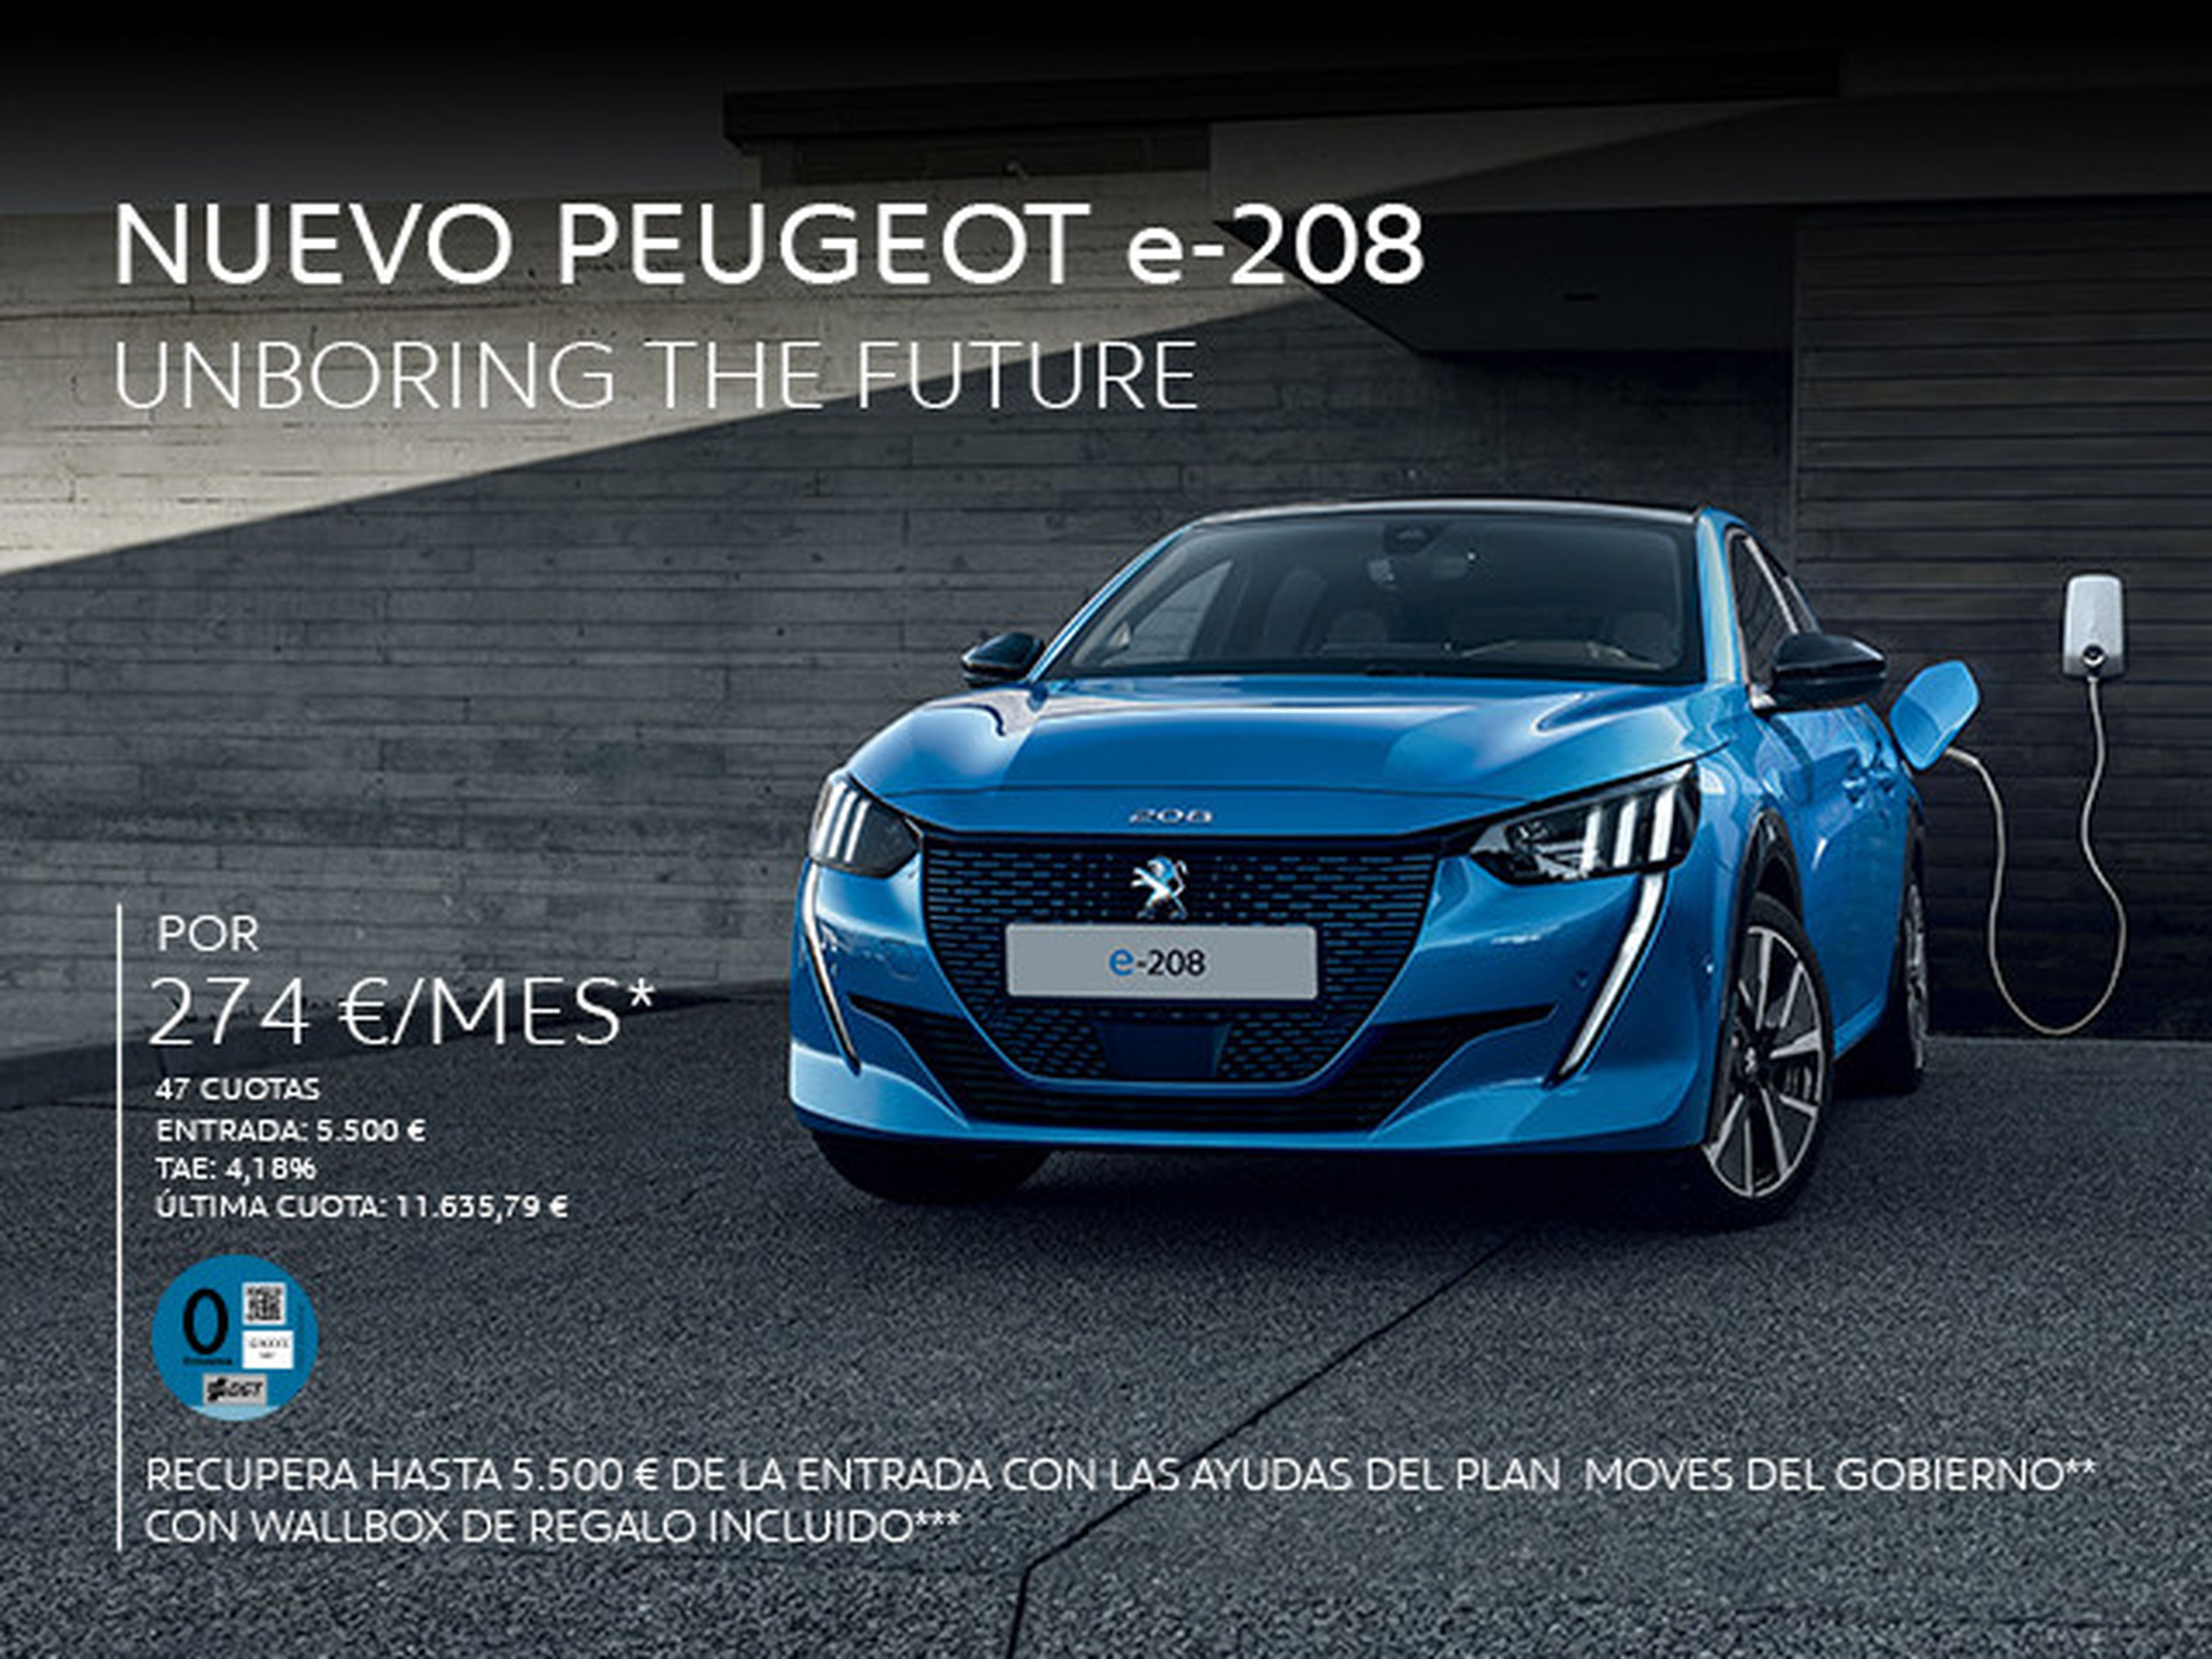 Peugeot e-208 precios